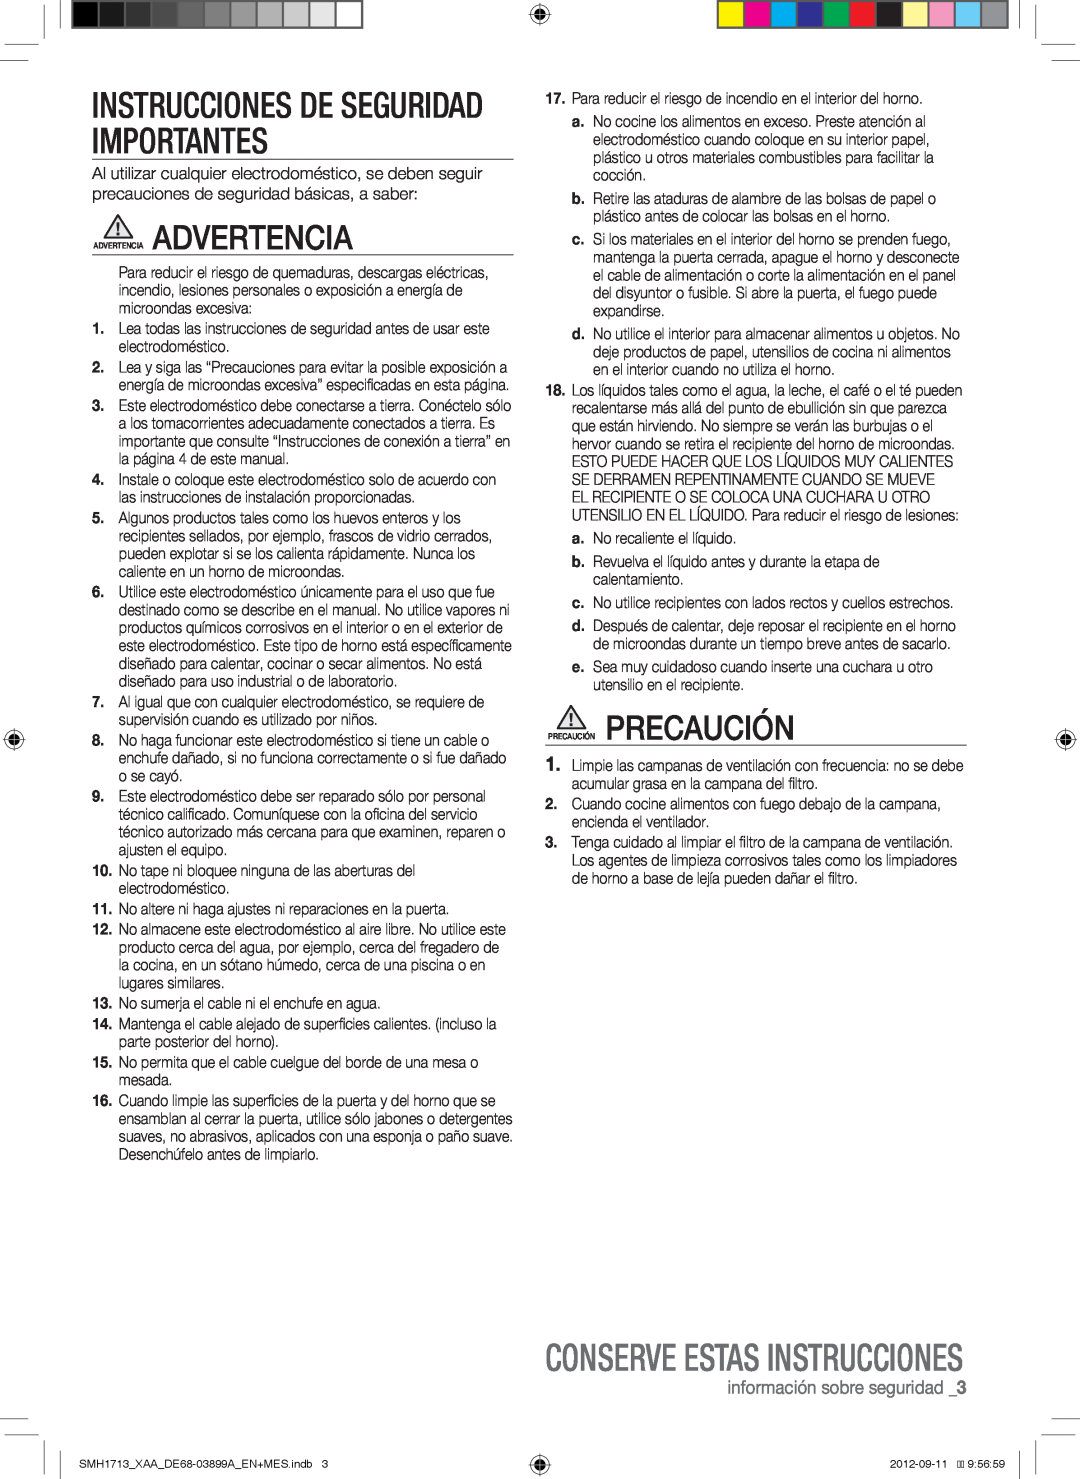 Samsung SMH1713S Instrucciones De Seguridad Importantes, Conserve Estas Instrucciones, información sobre seguridad 